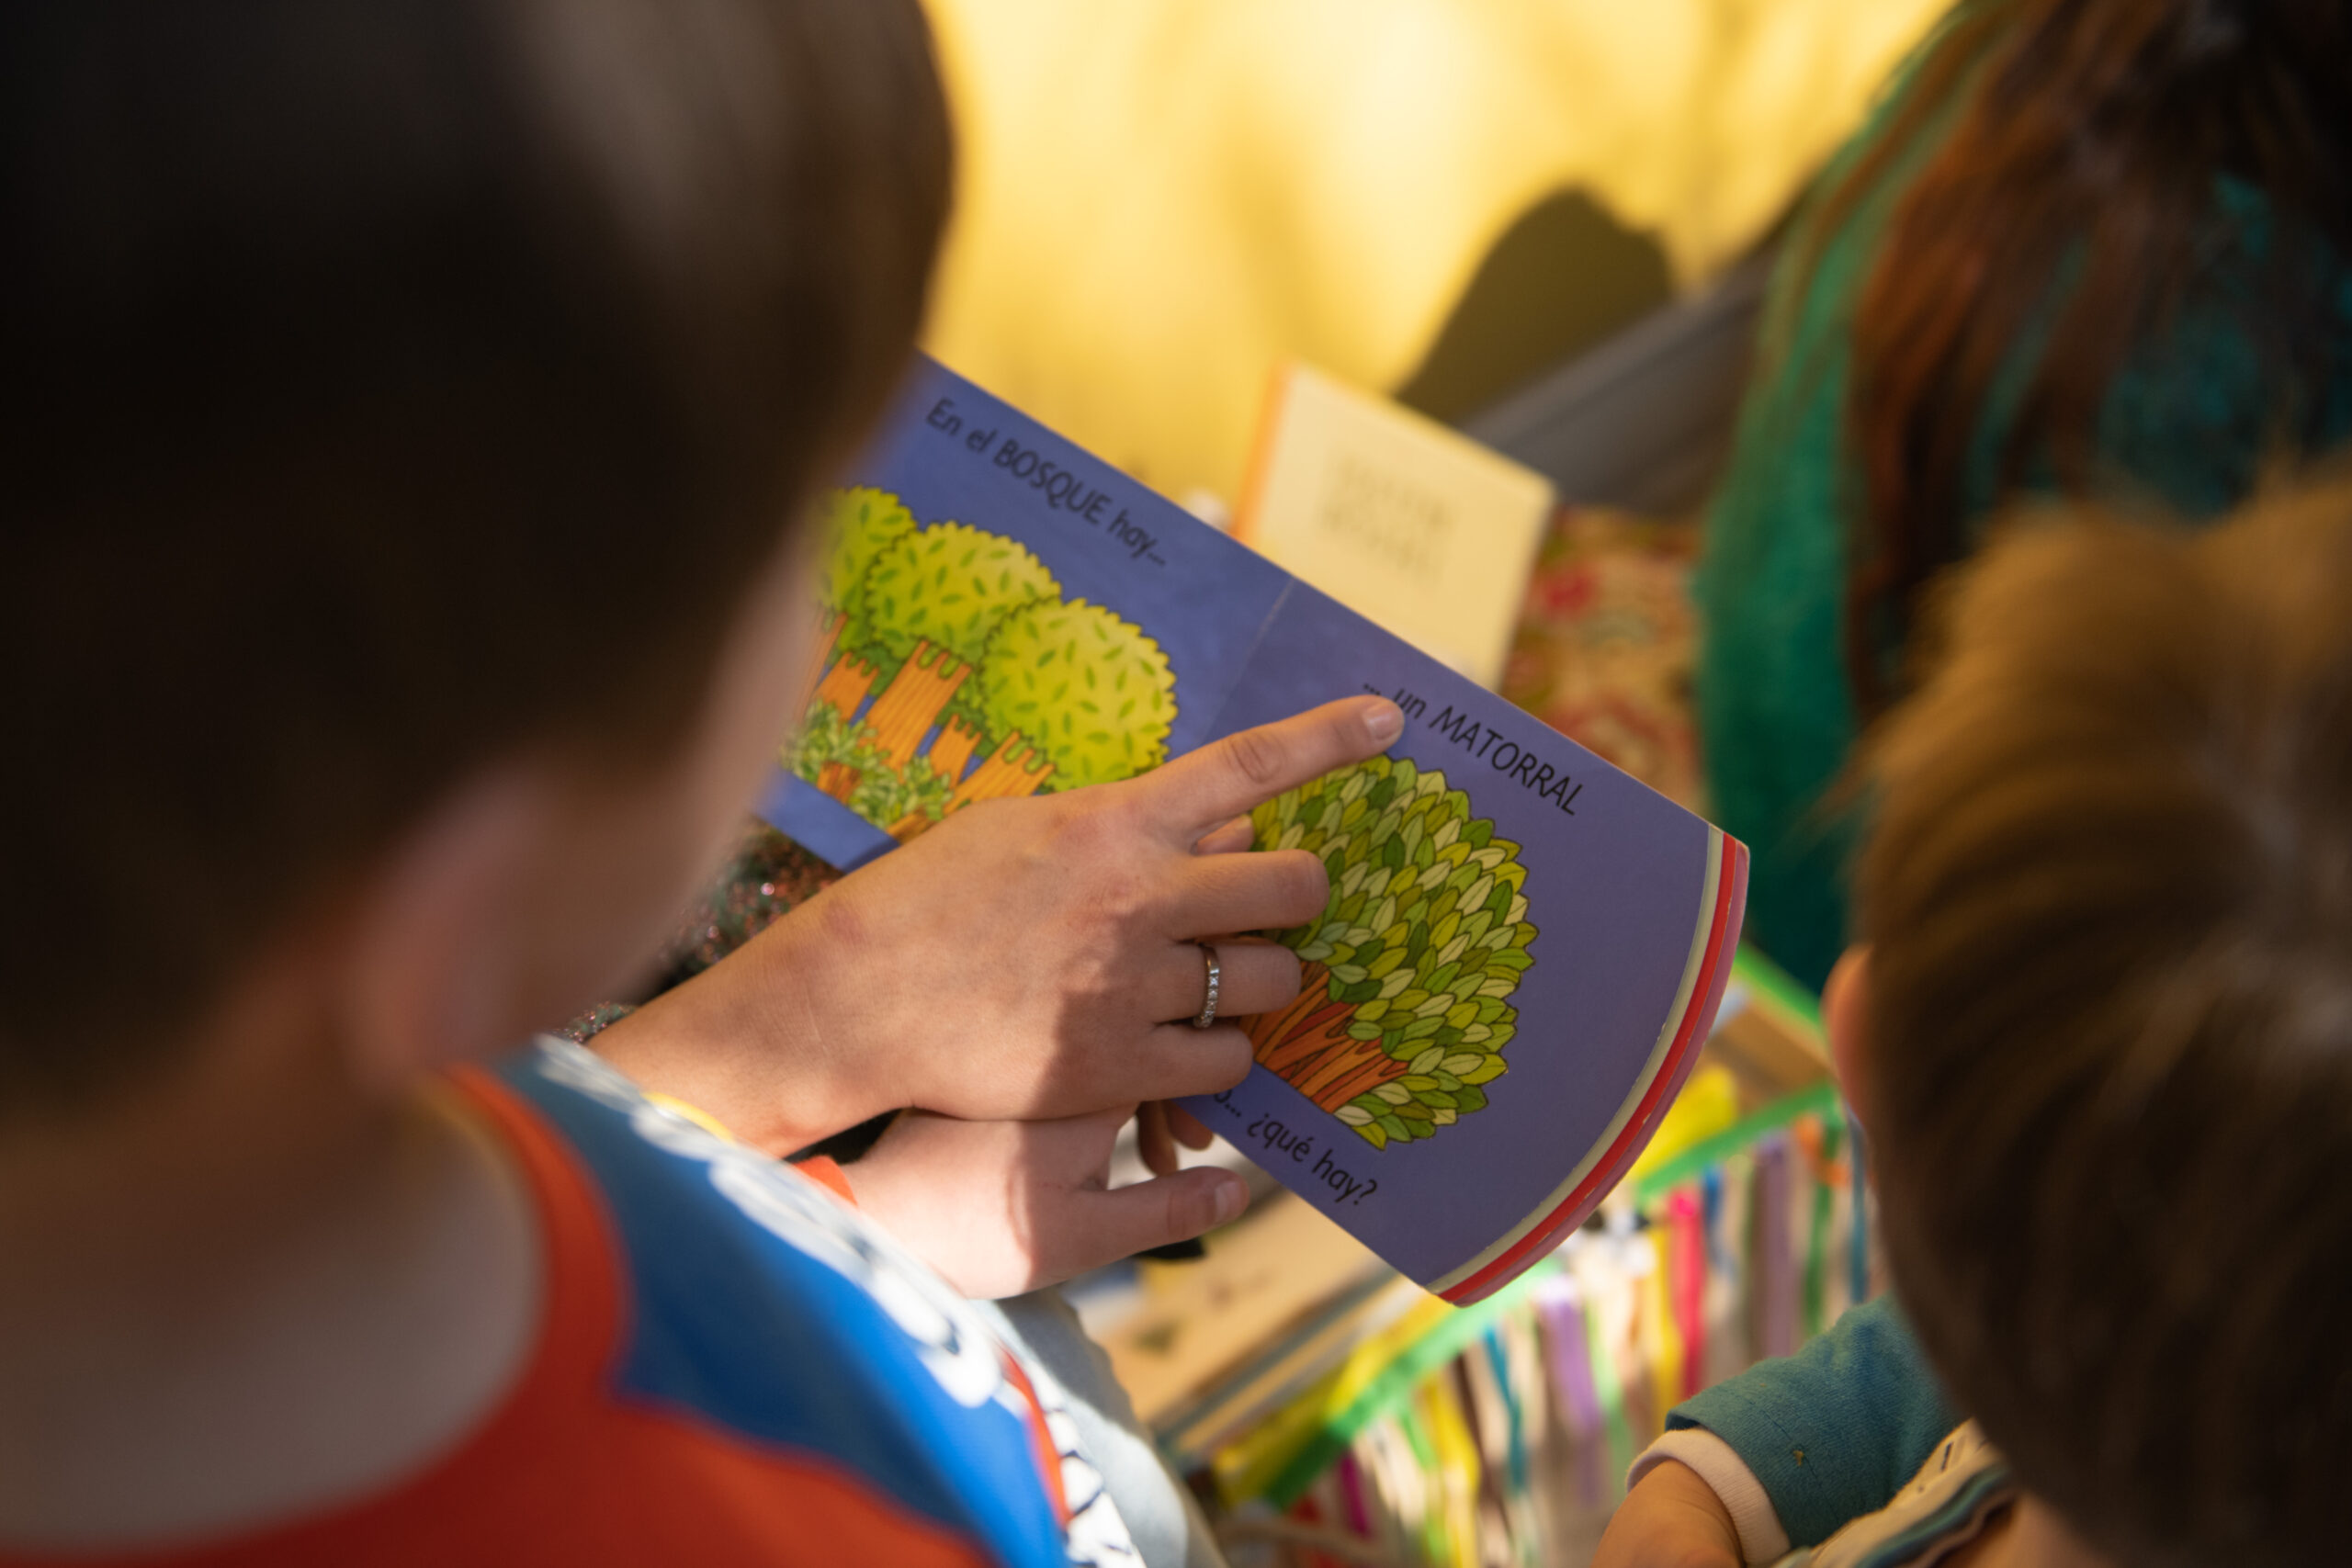 Un niño participando en la Etapa III del proceso de cuentacuentos. Se le nota leyendo un libro que tiene dibujos de u árbol.